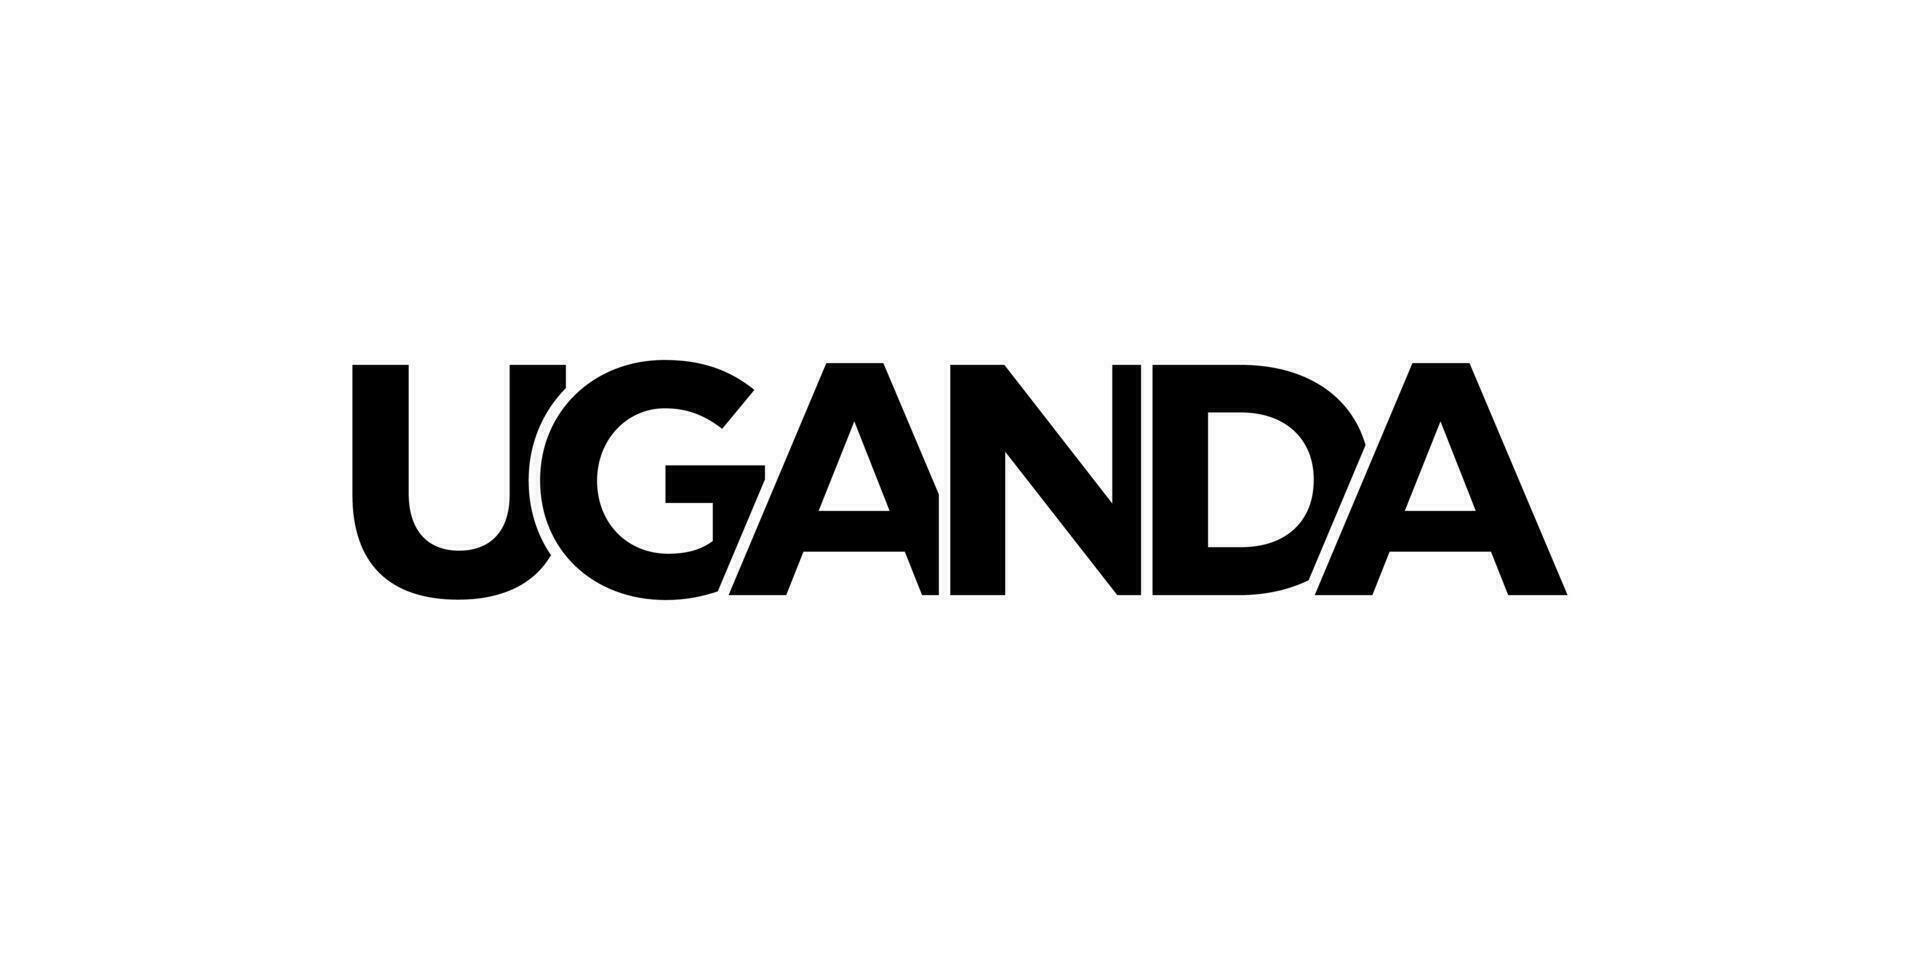 Uganda emblema. el diseño caracteristicas un geométrico estilo, vector ilustración con negrita tipografía en un moderno fuente. el gráfico eslogan letras.